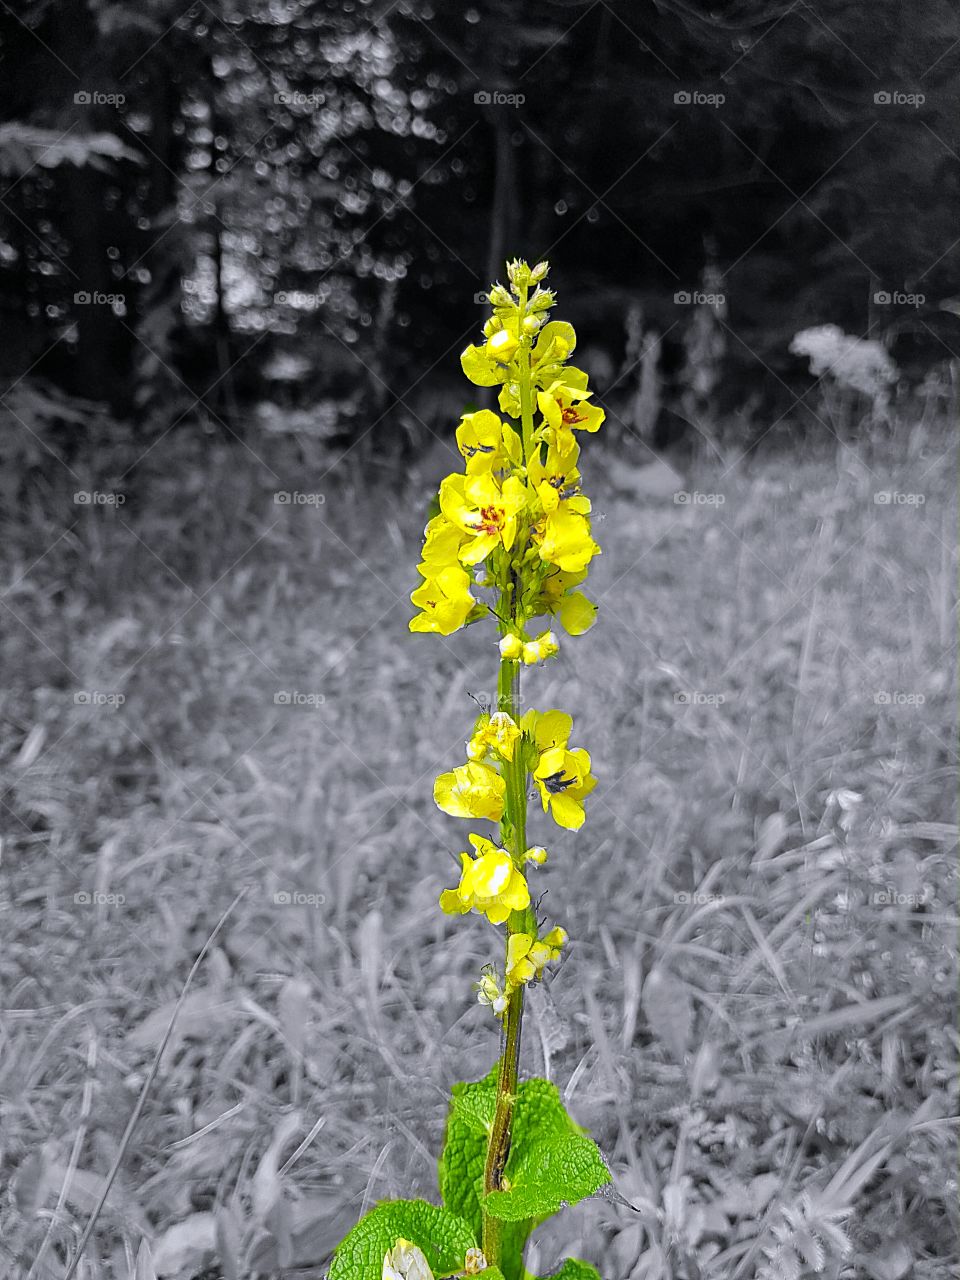 Carpatian orchid